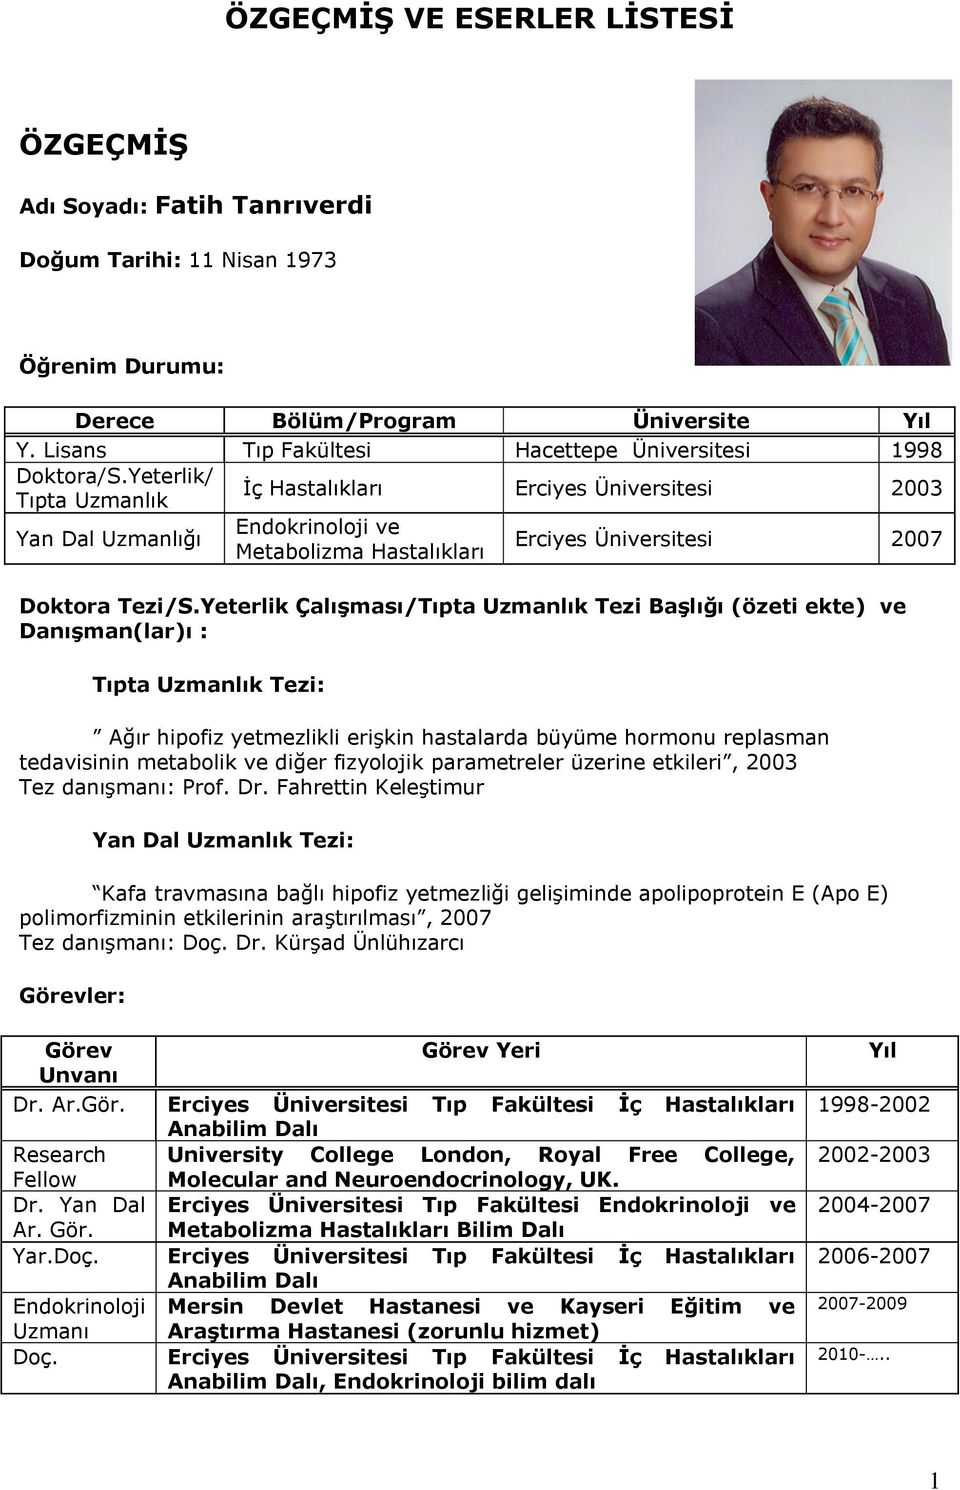 Yeterlik/ Tıpta Uzmanlık İç Hastalıkları Erciyes Üniversitesi 2003 Yan Dal Uzmanlığı Endokrinoloji ve Metabolizma Hastalıkları Erciyes Üniversitesi 2007 Doktora Tezi/S.